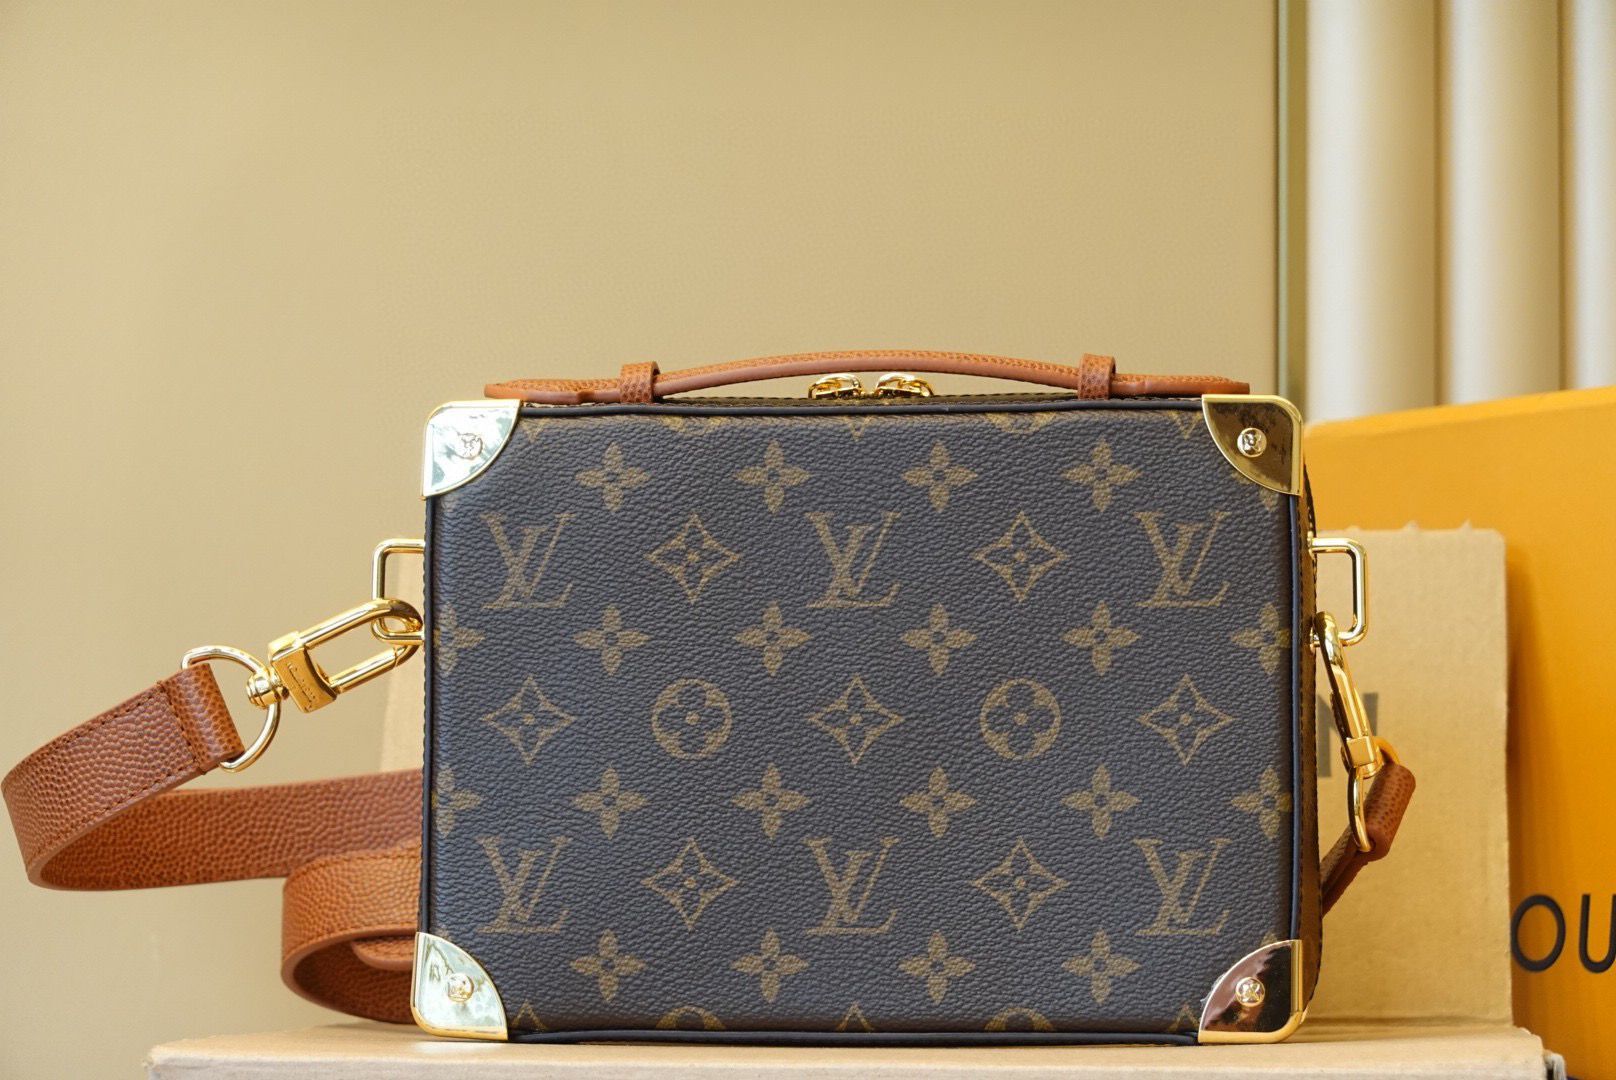 Louis Vuitton Monogram Canvas Handle Trunk Original Leather Bag M45785 Brown